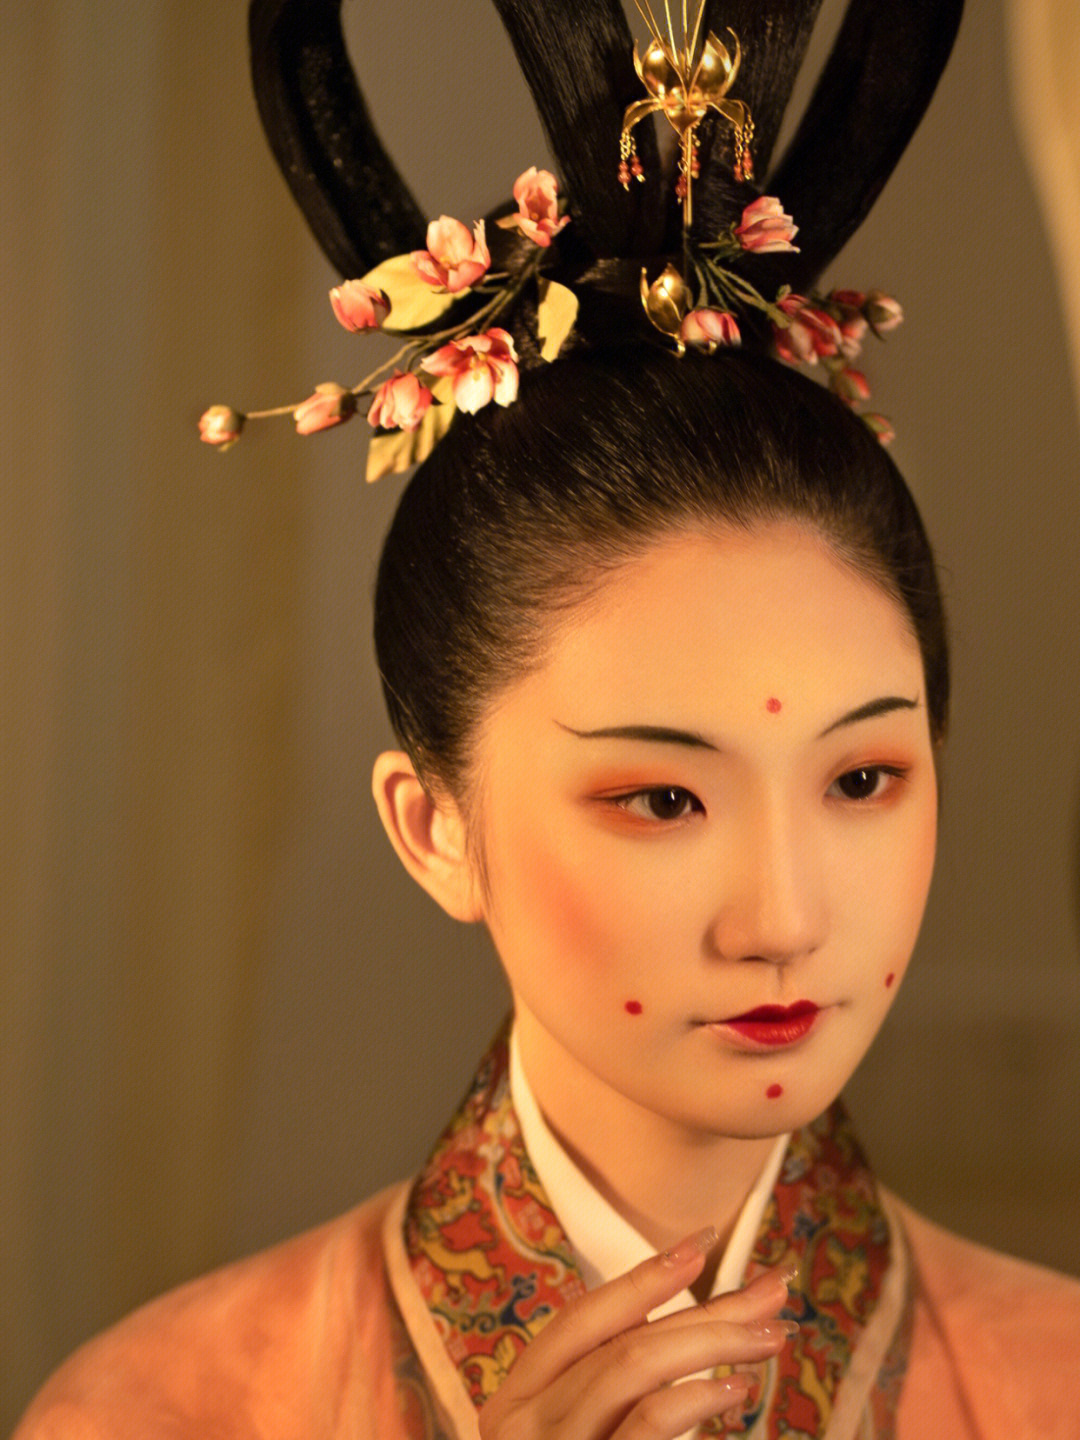 历史朝代复原造型课程学习先秦至清各朝代比较有特色和代表性的妆容和